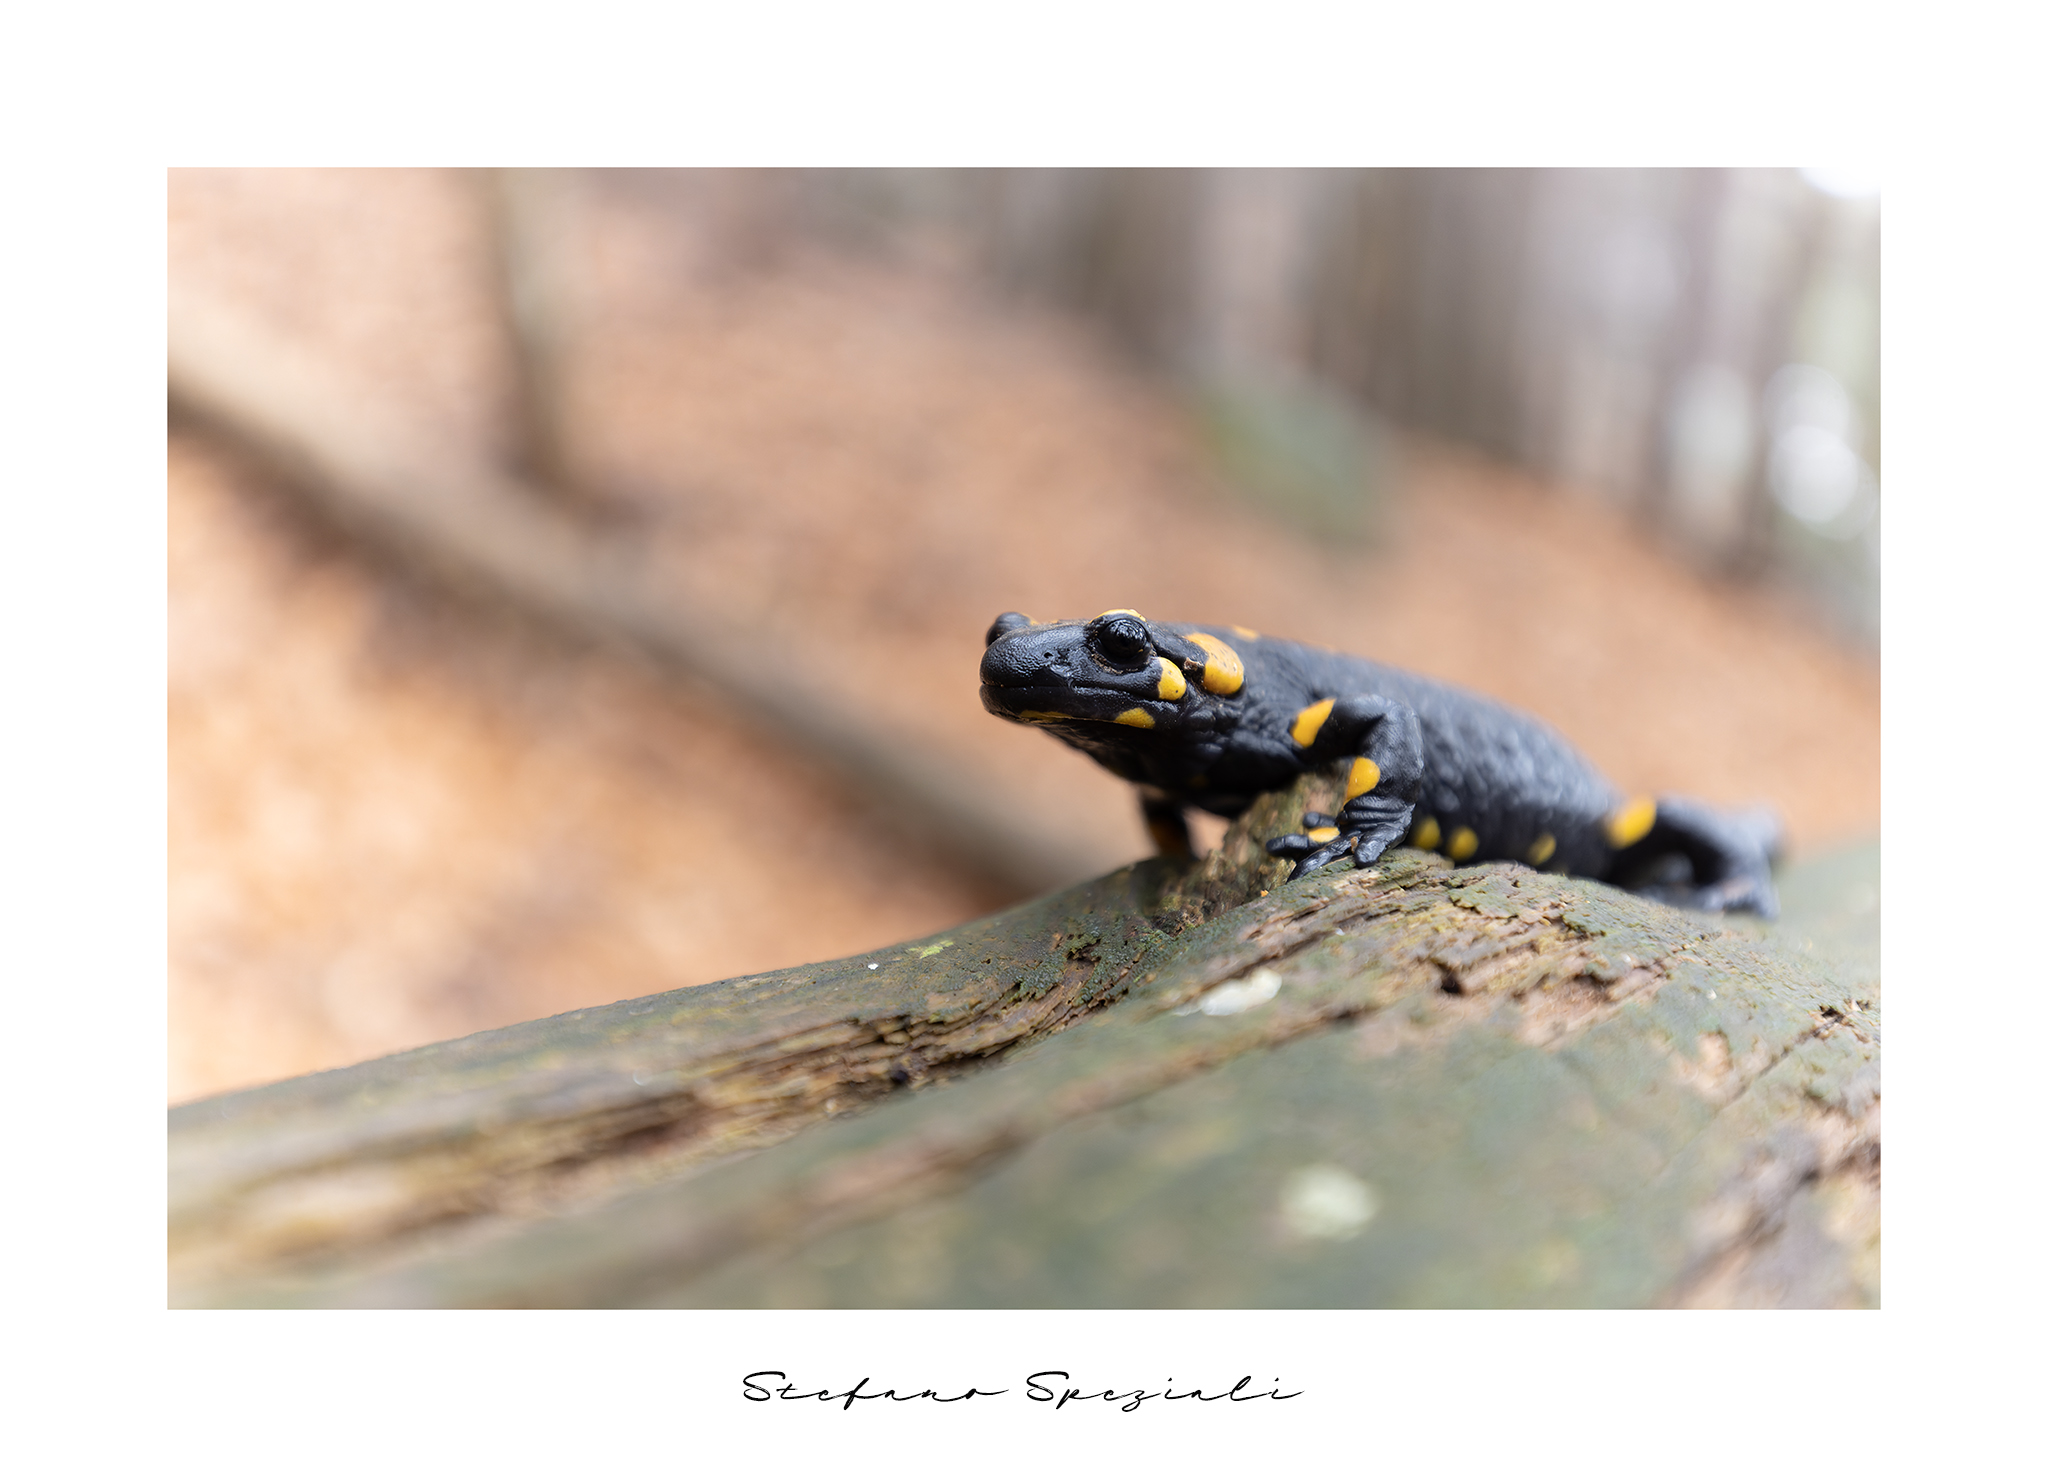 Salamander - Salamander salamander...